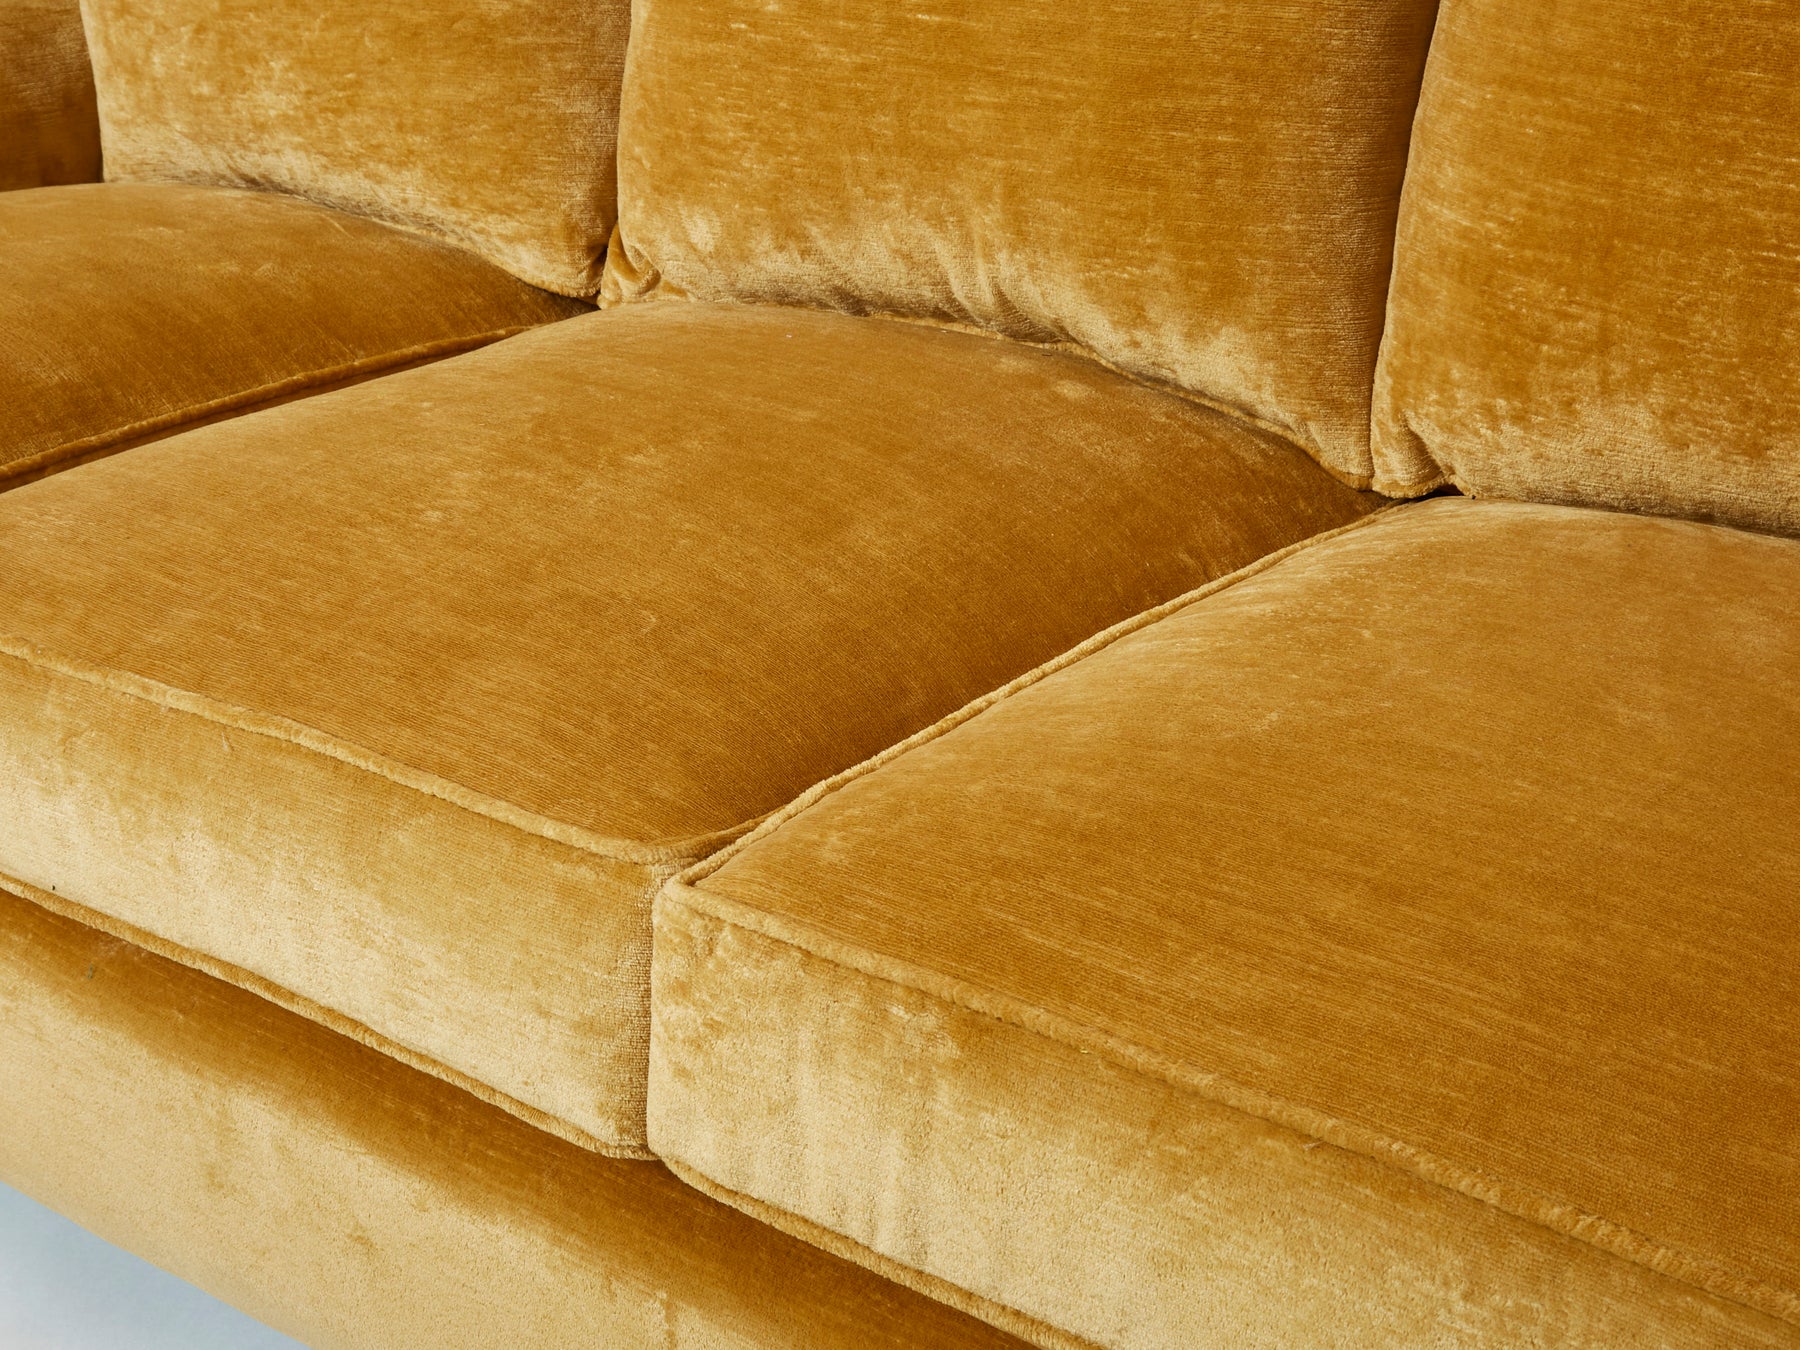 Jean-Michel Frank art deco sofa new velvet upholstery 1935